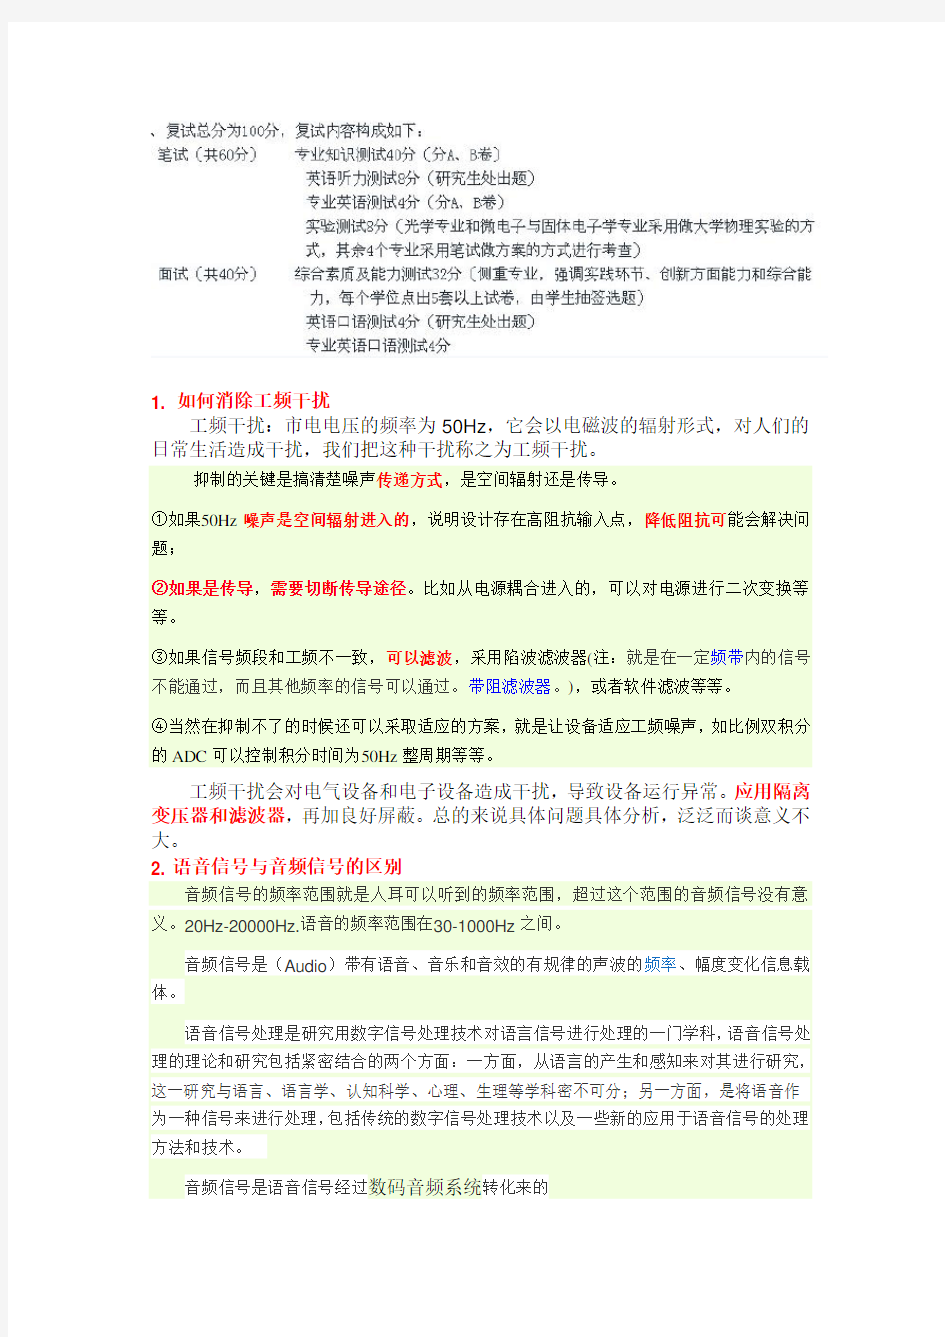 (完整word版)福州大学电子通信、集成电路考研复试问题总结